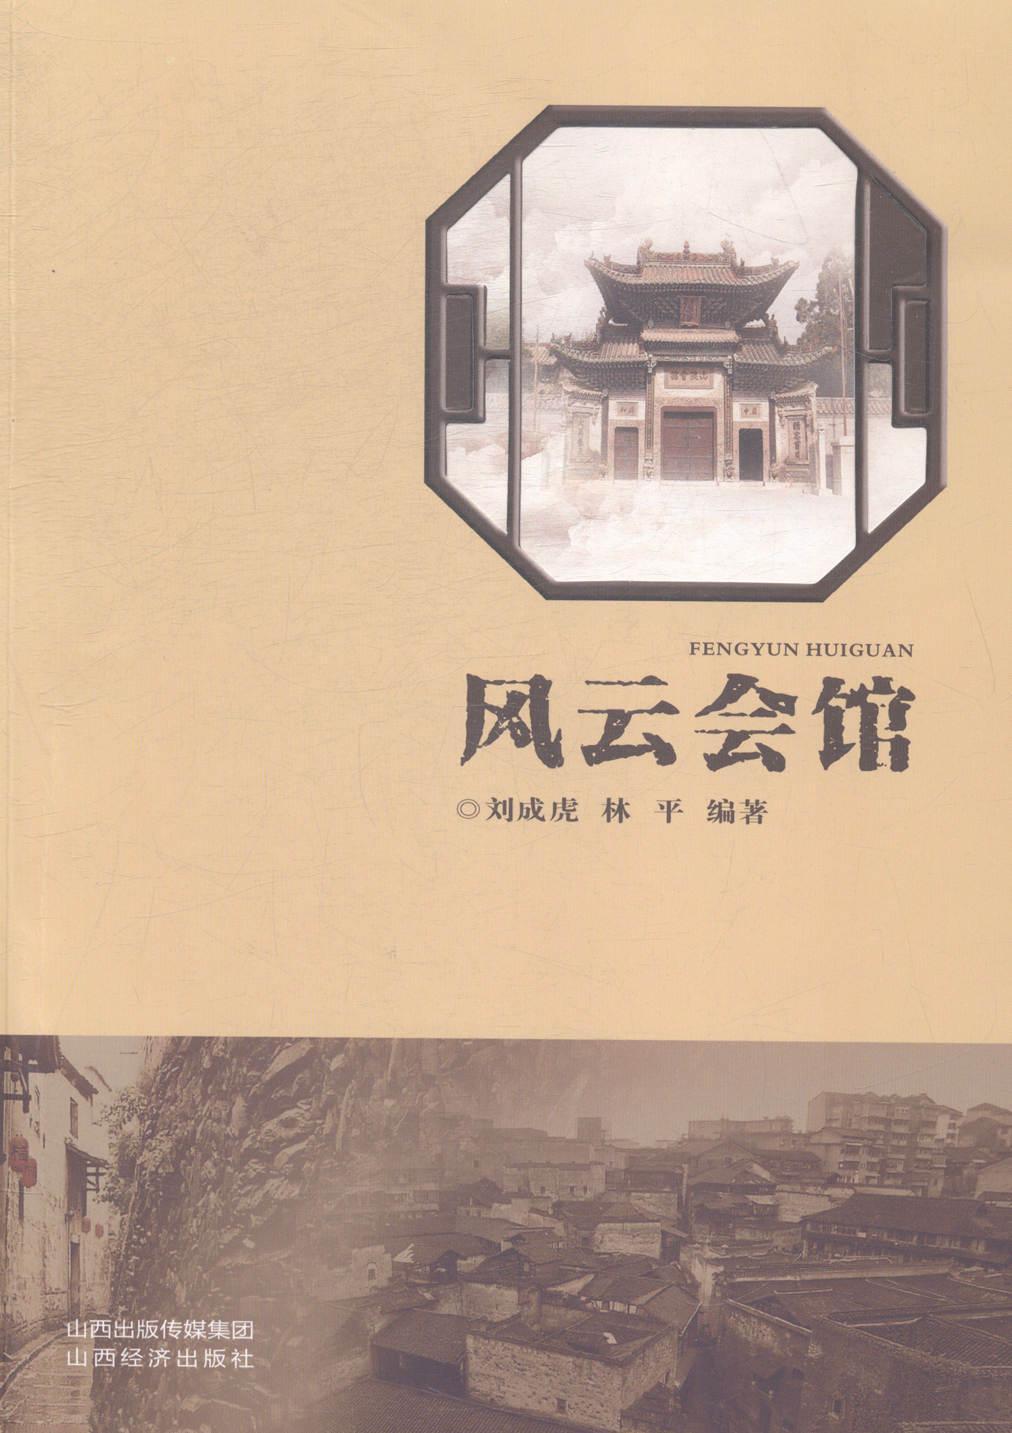 书籍正版 风云会馆 刘成虎 山西经济出版社 历史 9787807678342